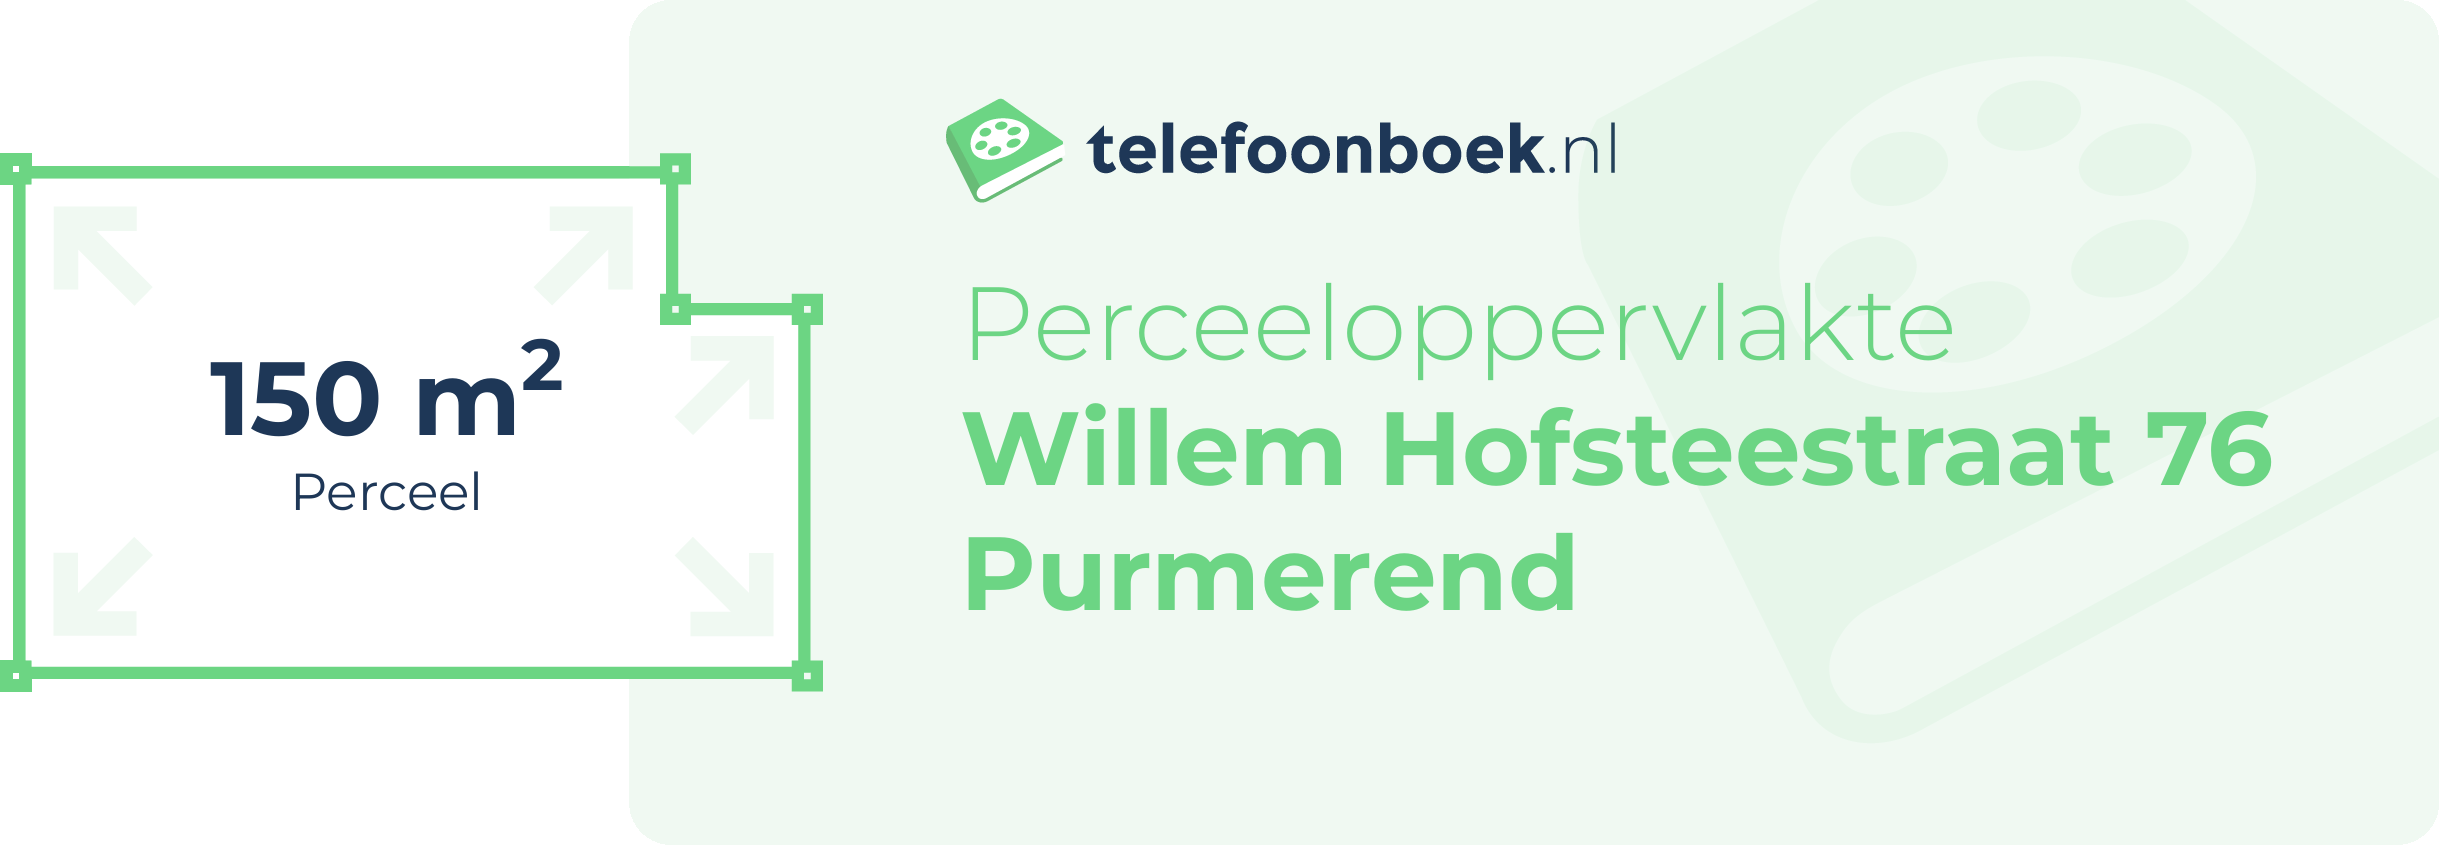 Perceeloppervlakte Willem Hofsteestraat 76 Purmerend